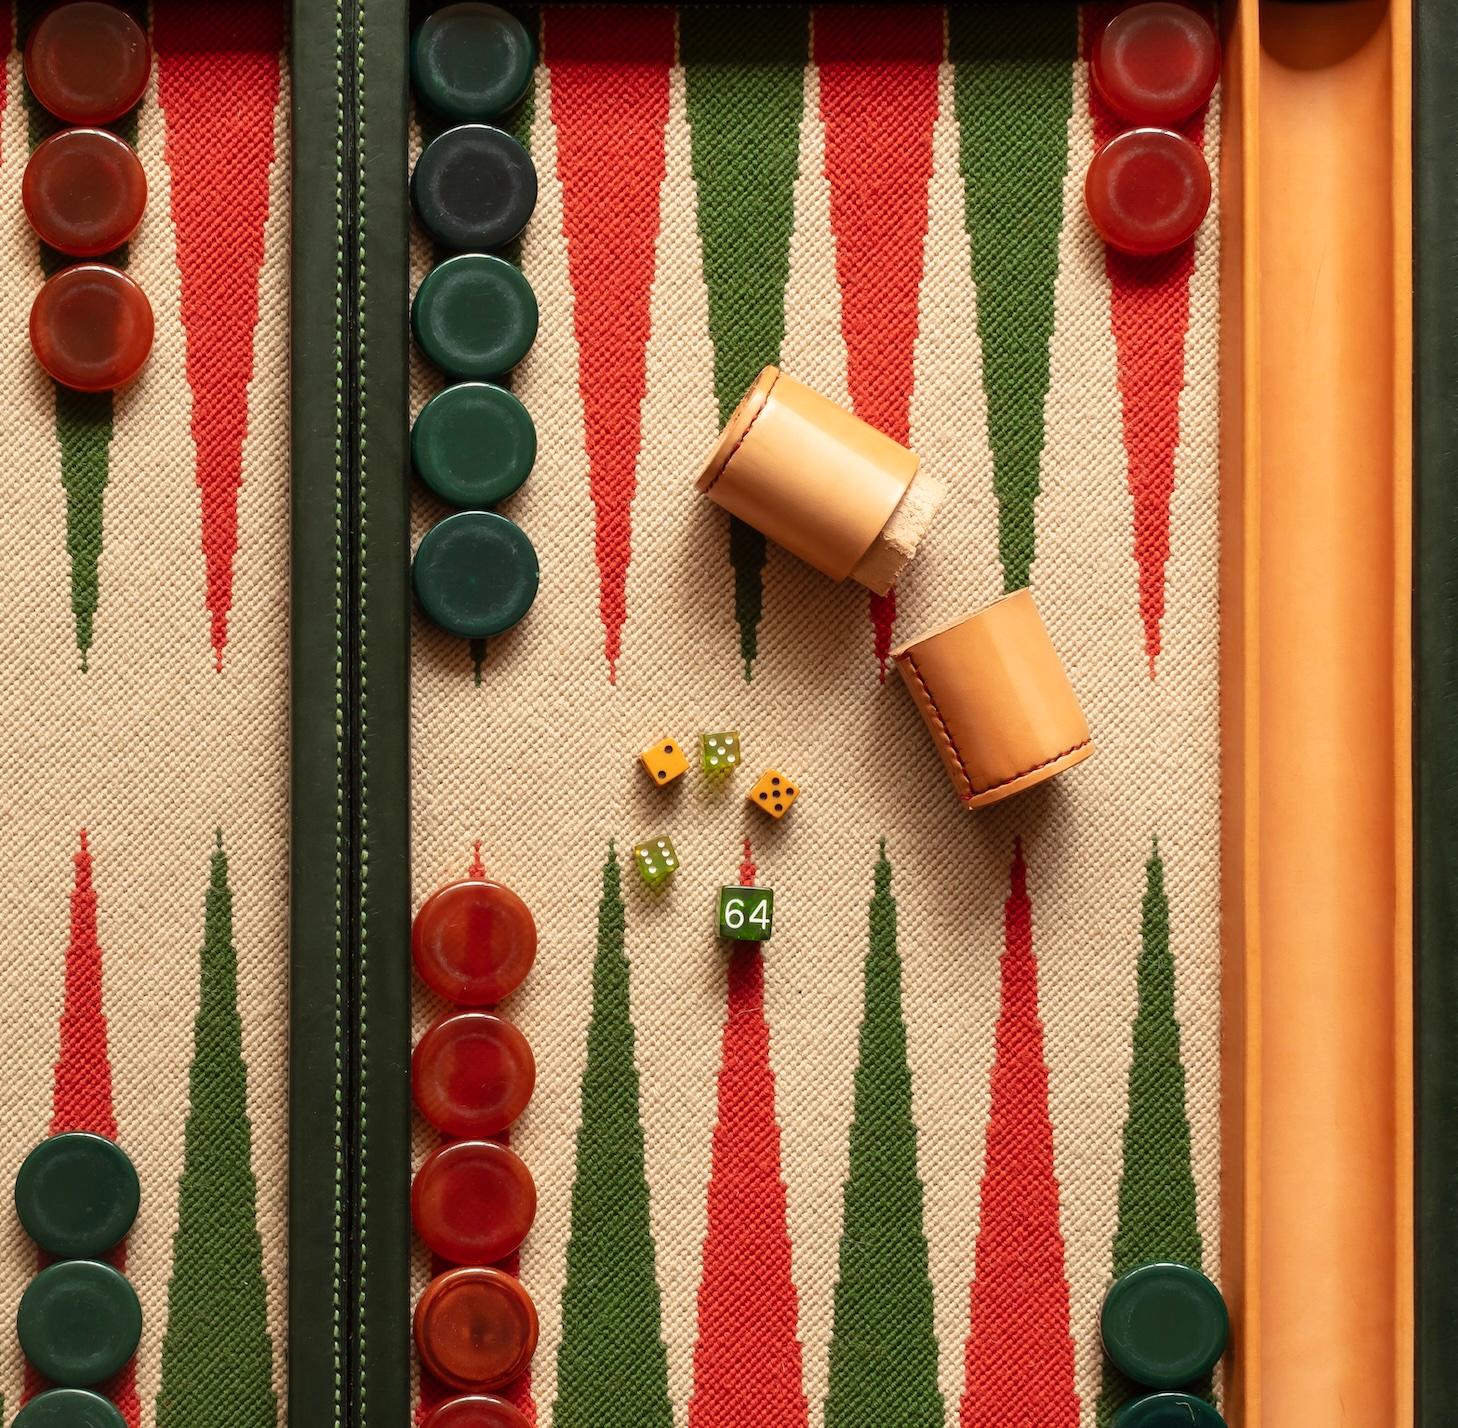 needlepoint backgammon